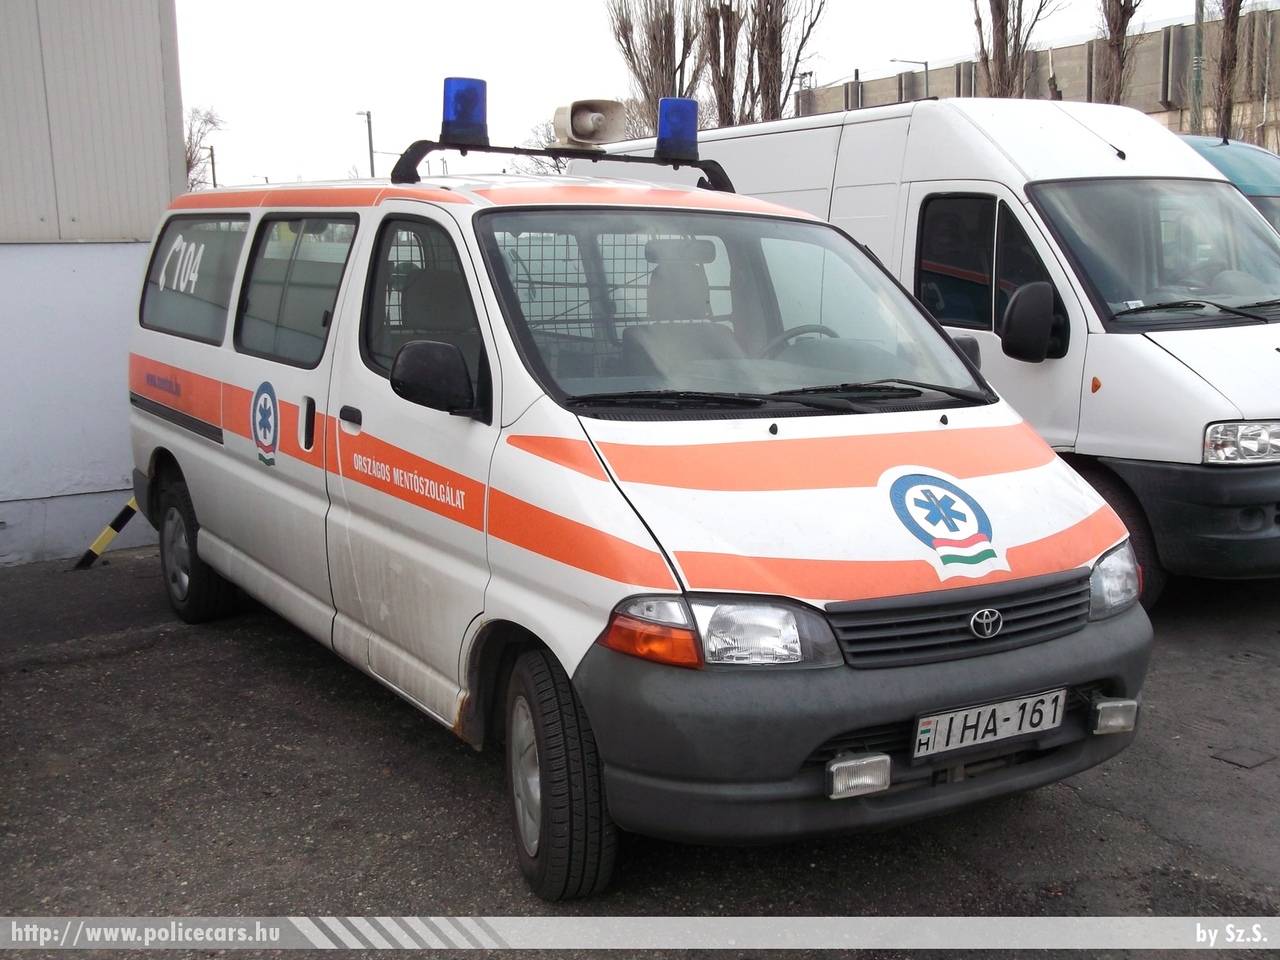 Toyota Hiace, Országos Mentõszolgálat, fotó: Sz.S.
Keywords: magyar Magyarország mentő mentőautó OMSZ Hungary hungarian ambulance IHA-161